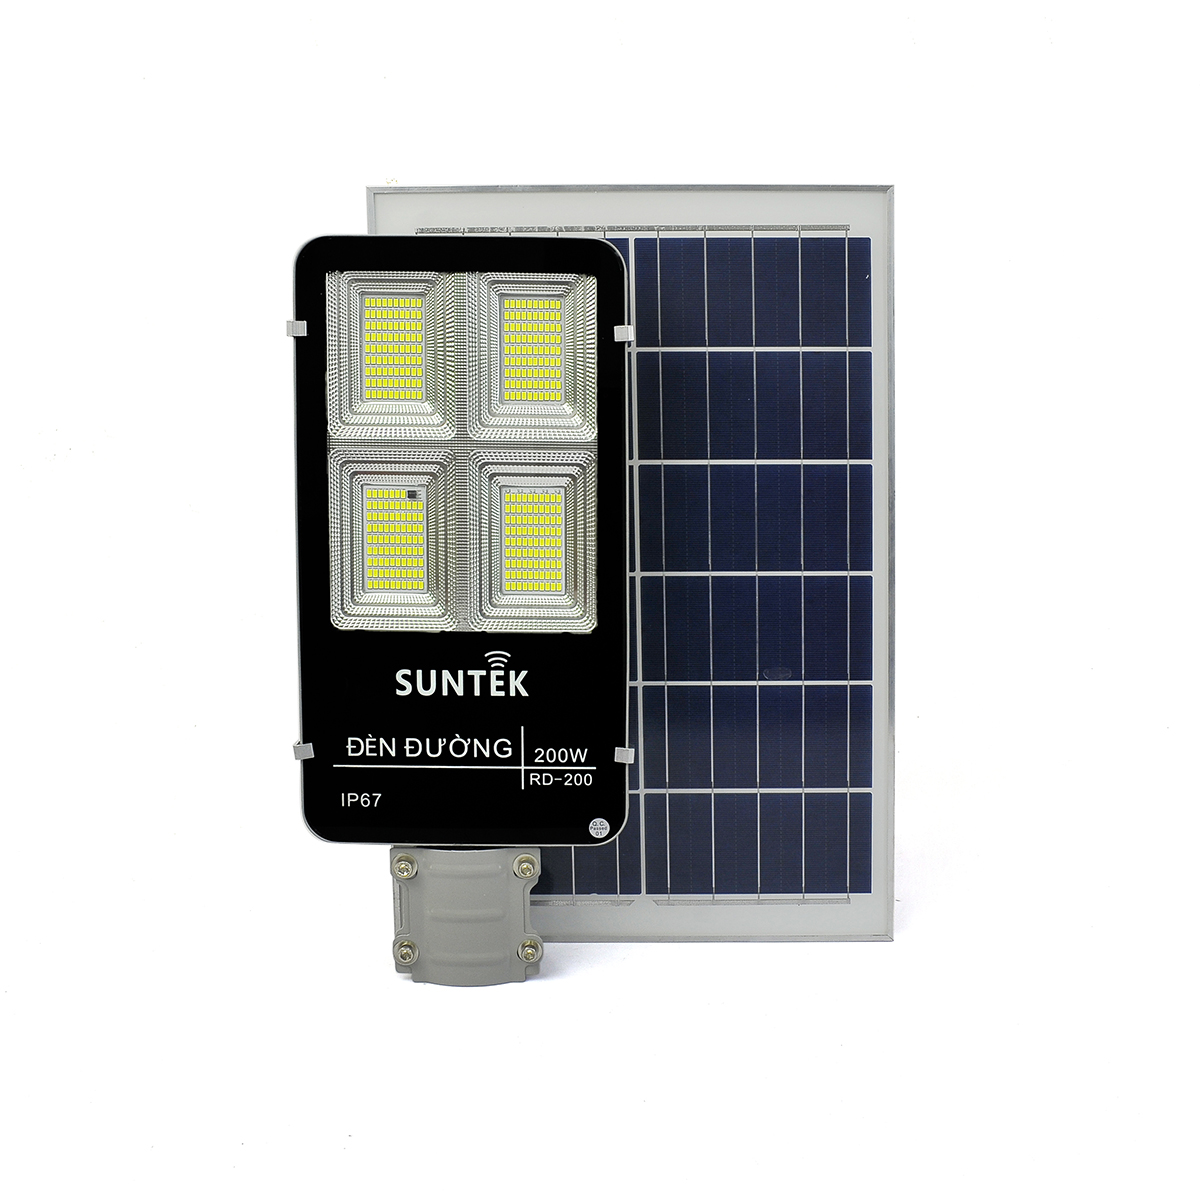 Đèn Đường Năng Lượng Mặt Trời SUNTEK Solar Street Light RD-200 200W - Sáng suốt đêm (12h liên tục) | Tự động Bật/Tắt | Điều khiển Từ xa | Chống Nước/Bụi/Va đập/Sét - Hàng Chính Hãng - Bảo hành 18 tháng